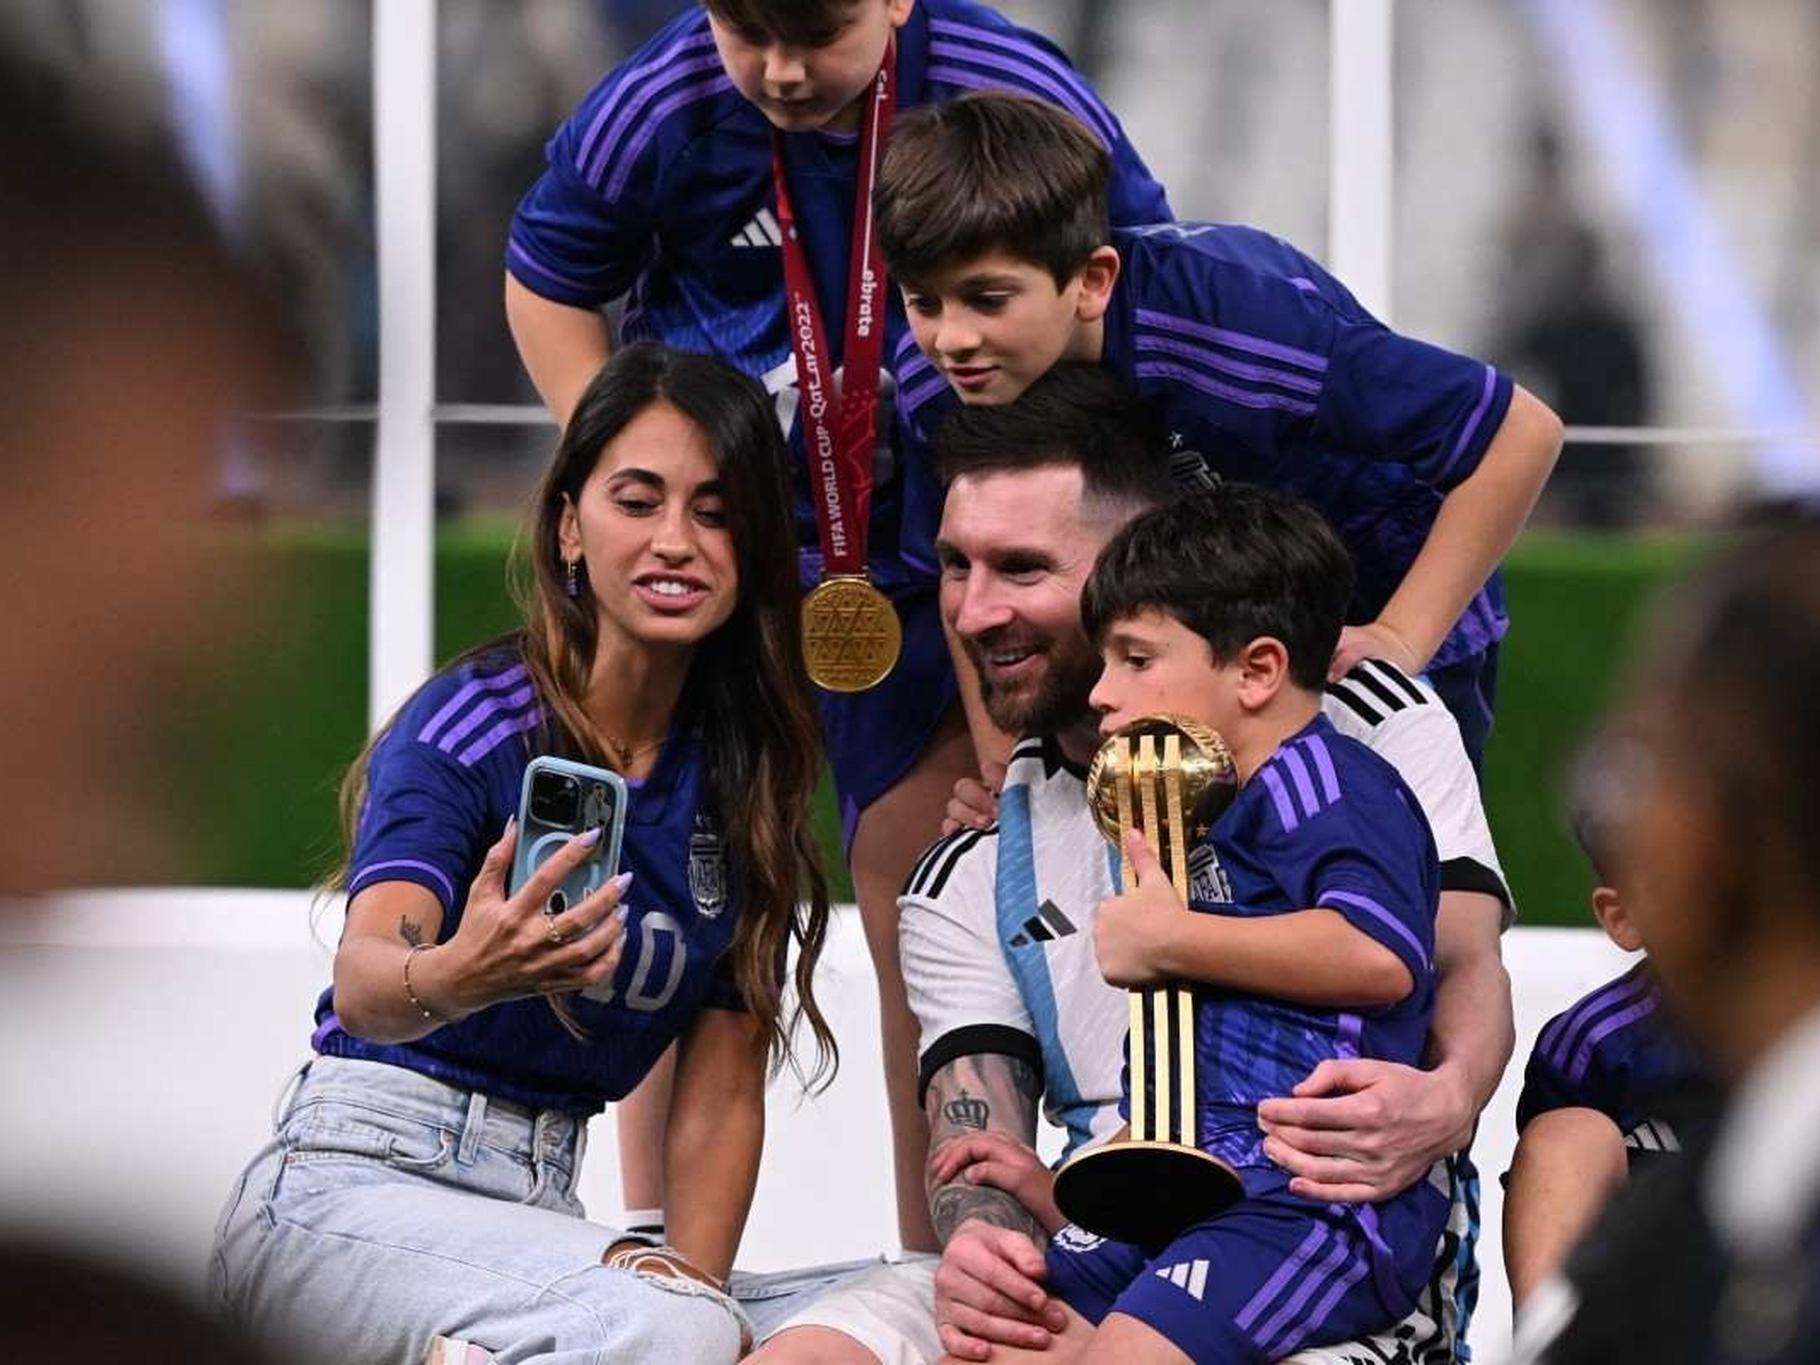 Post de Messi com a taça da Copa é o segundo mais curtido do Instagram